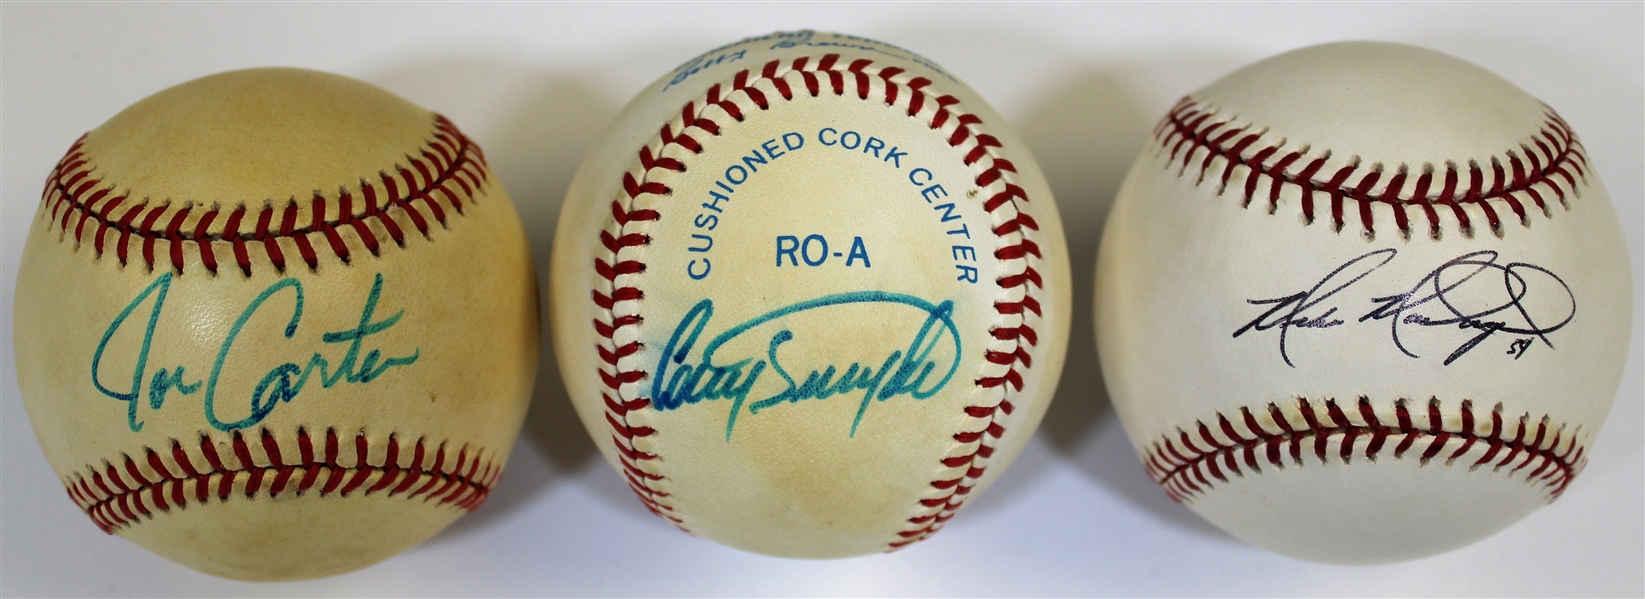 Joe Carter-Cory Snyder-Mike MacDougal Signed Baseballs